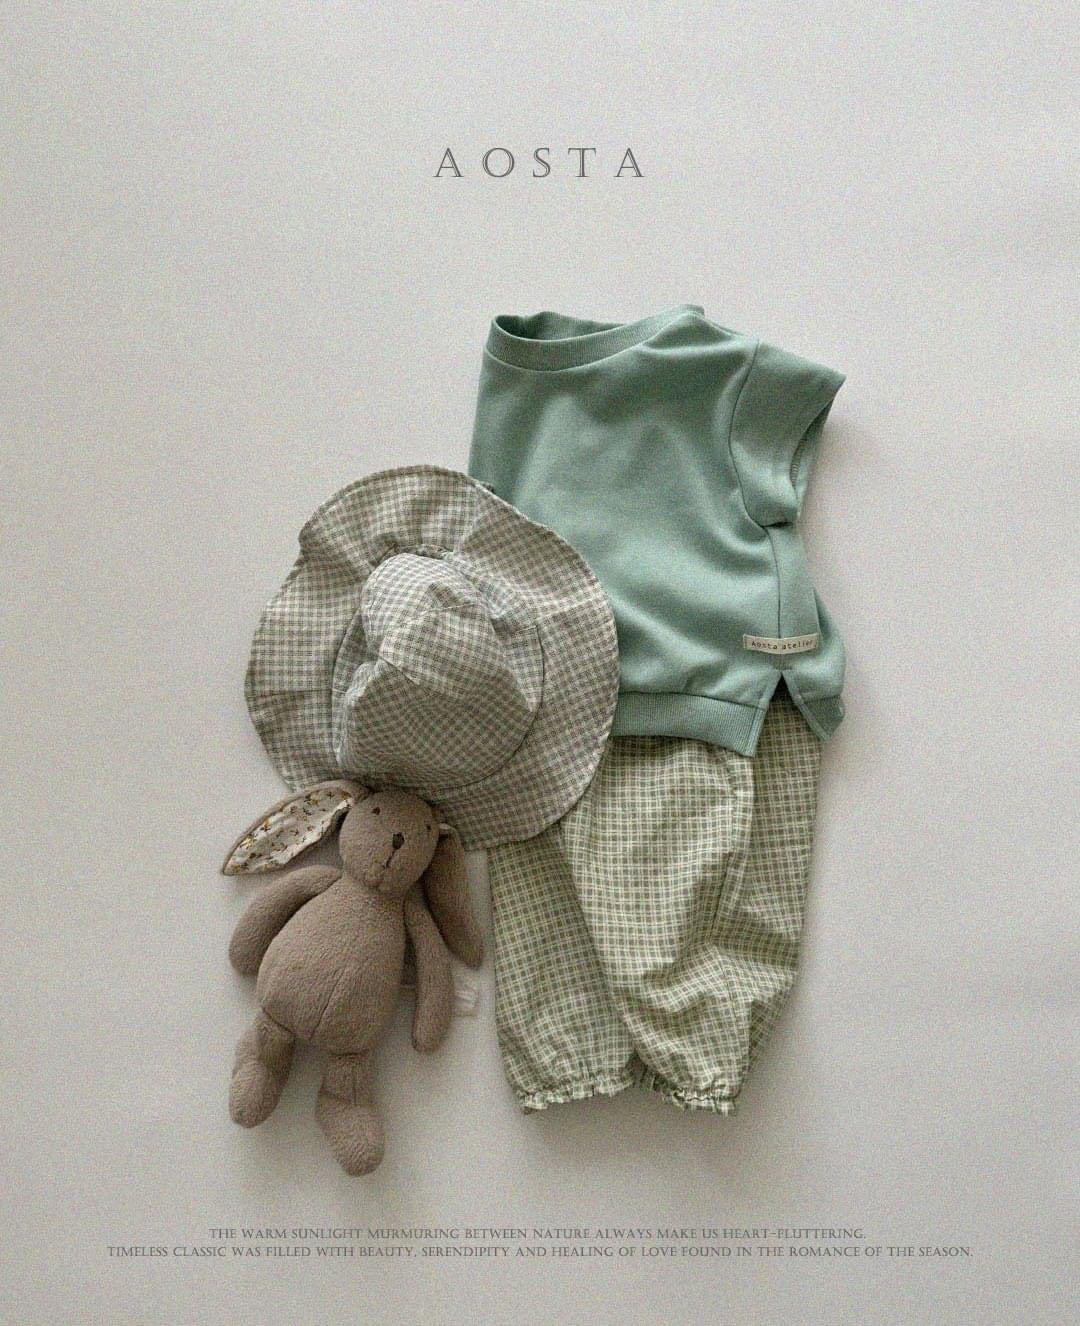 Aosta Bermuda素色系列-短袖上衣 (Bebe & kids ~70-115cm)